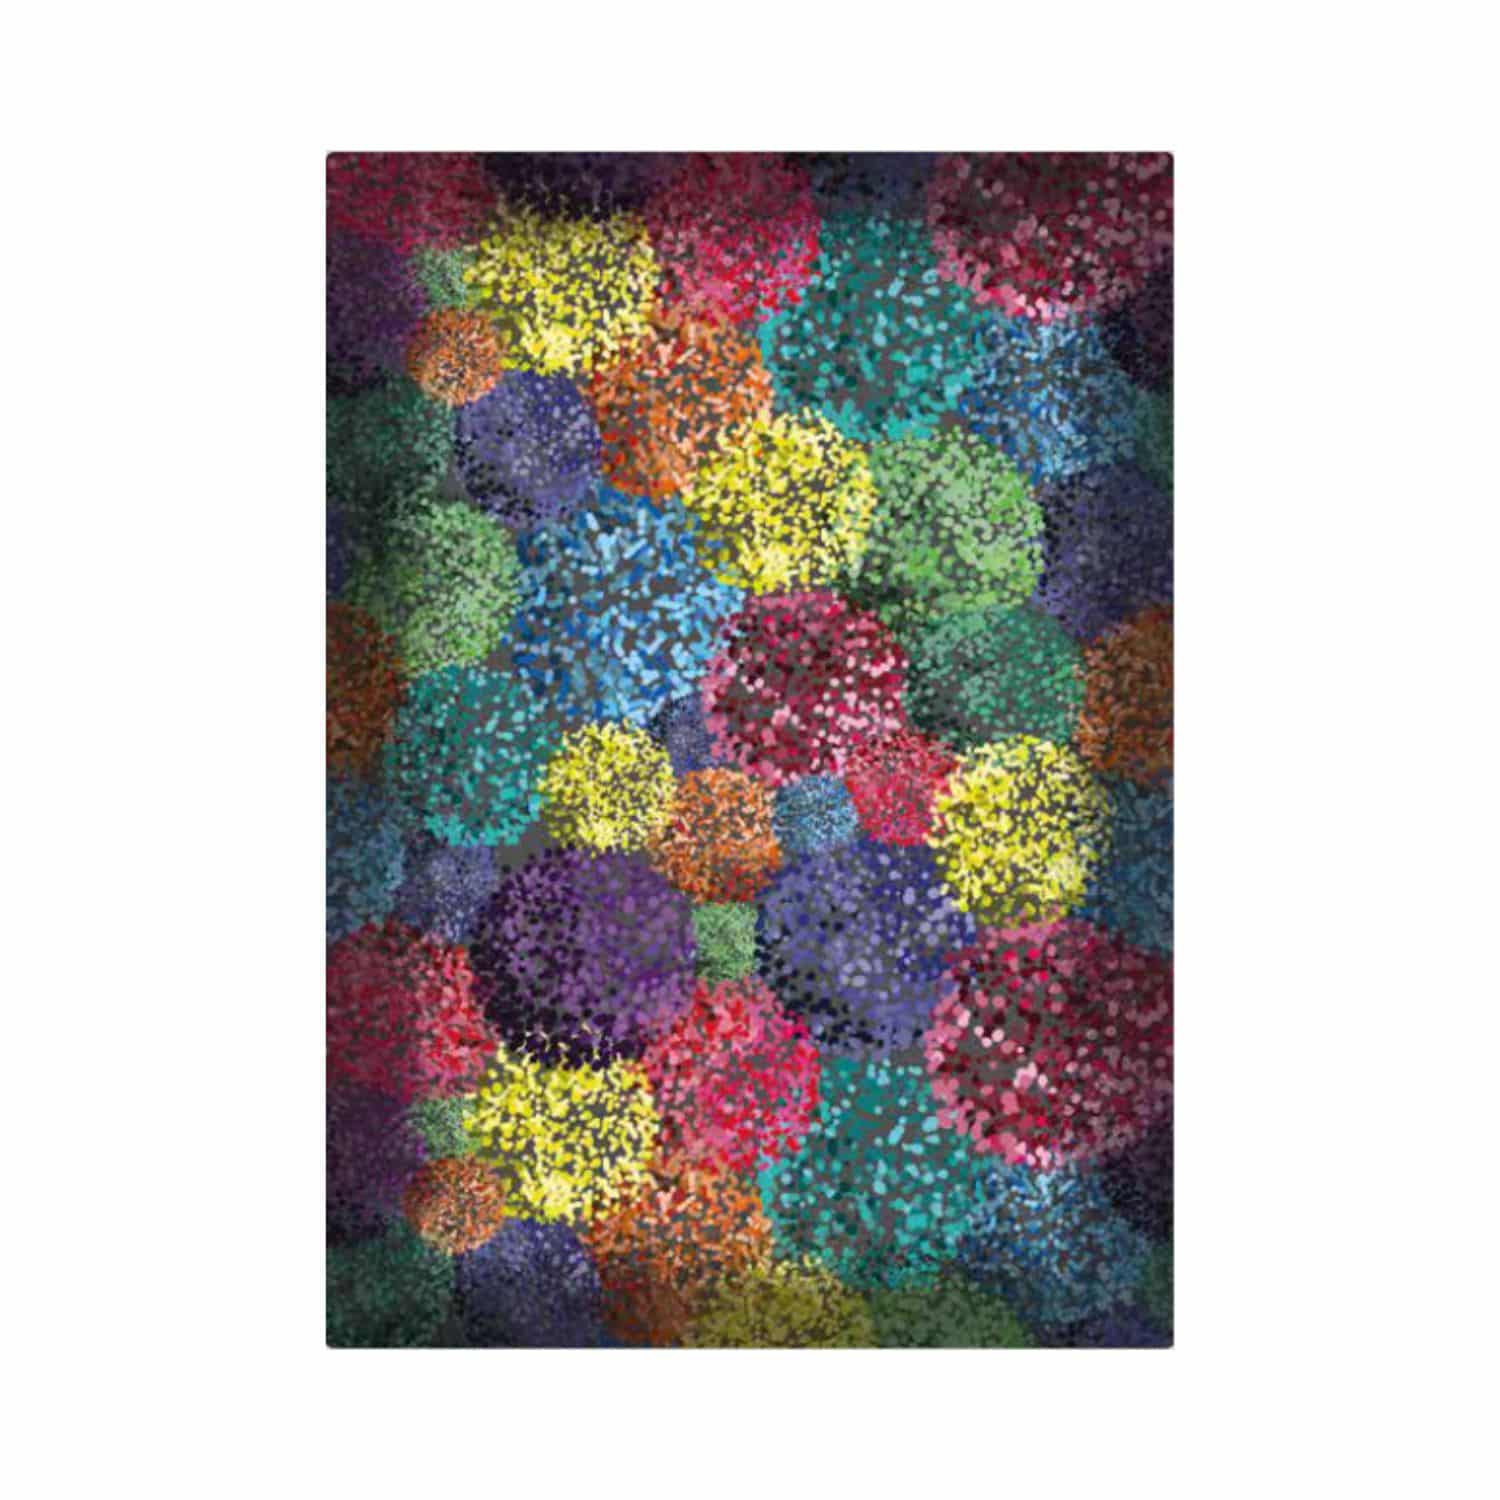 edmond-tappeto-arredo-emozioni-artista-made-in-italy-astratto-pittoresco-sfumato-multicolor-front